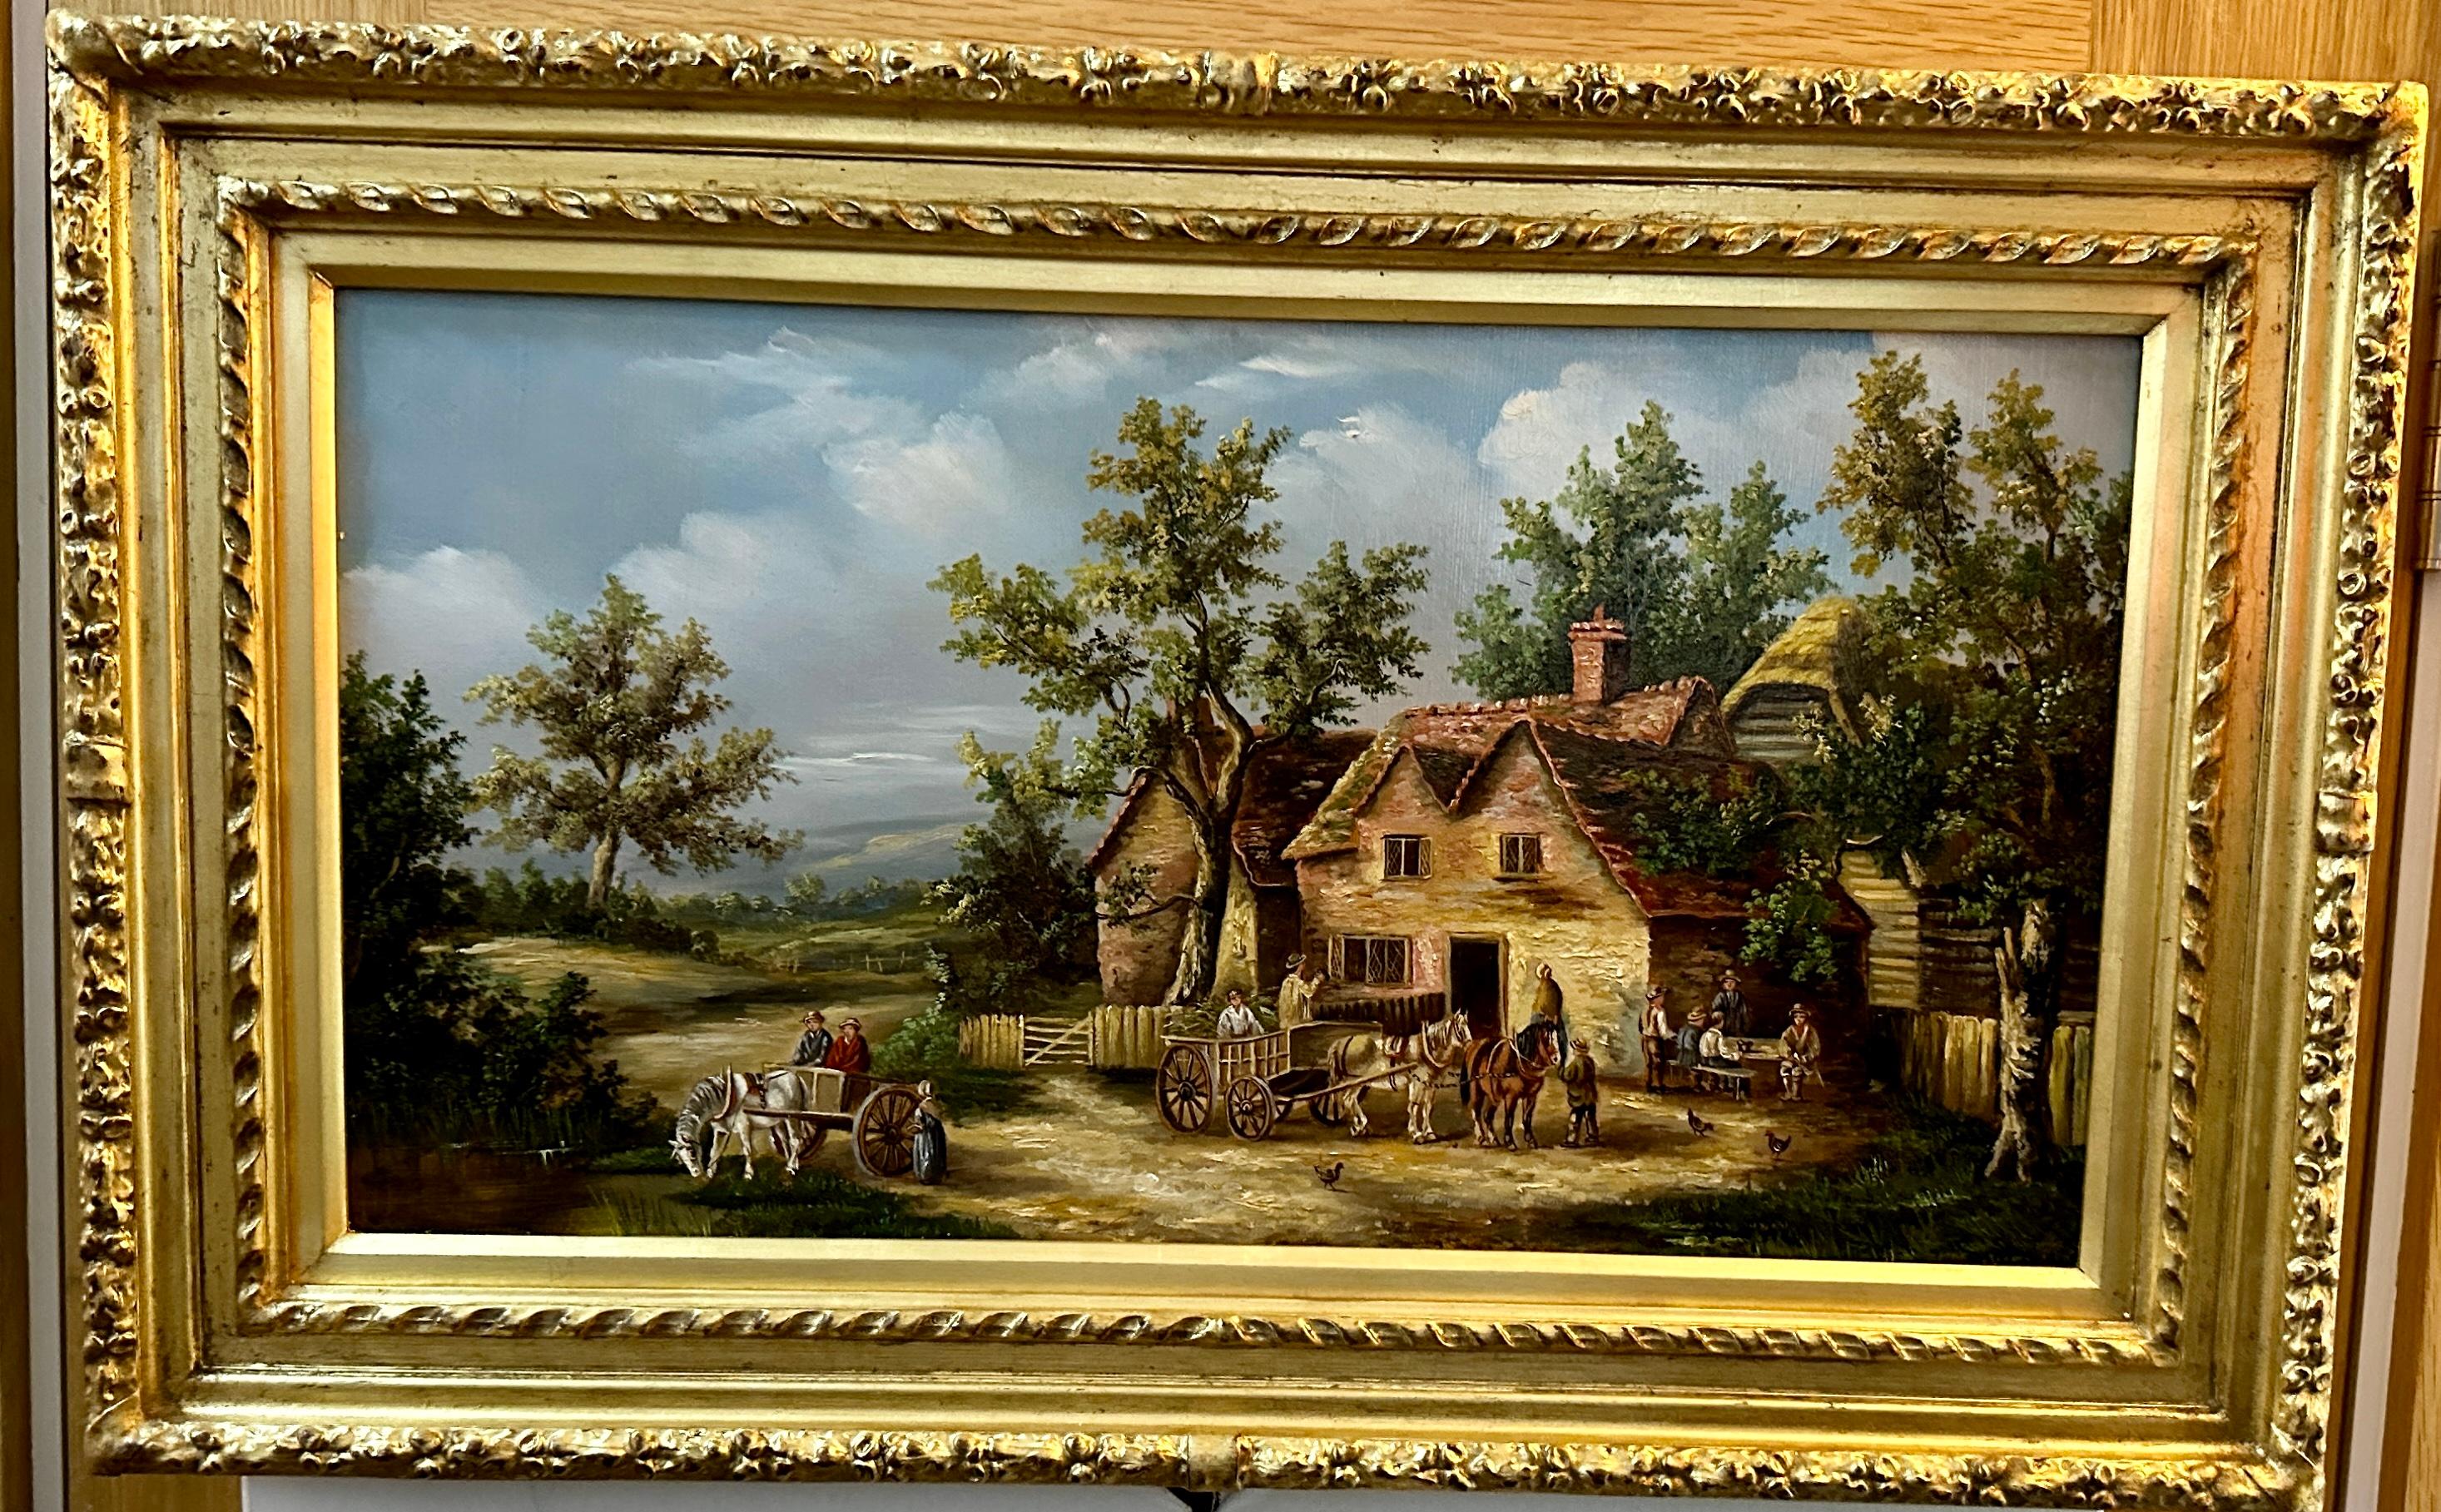 Landscape Painting Georgina Lara - Scène de village anglaise du 19e siècle avec cottages, chevaux et personnes